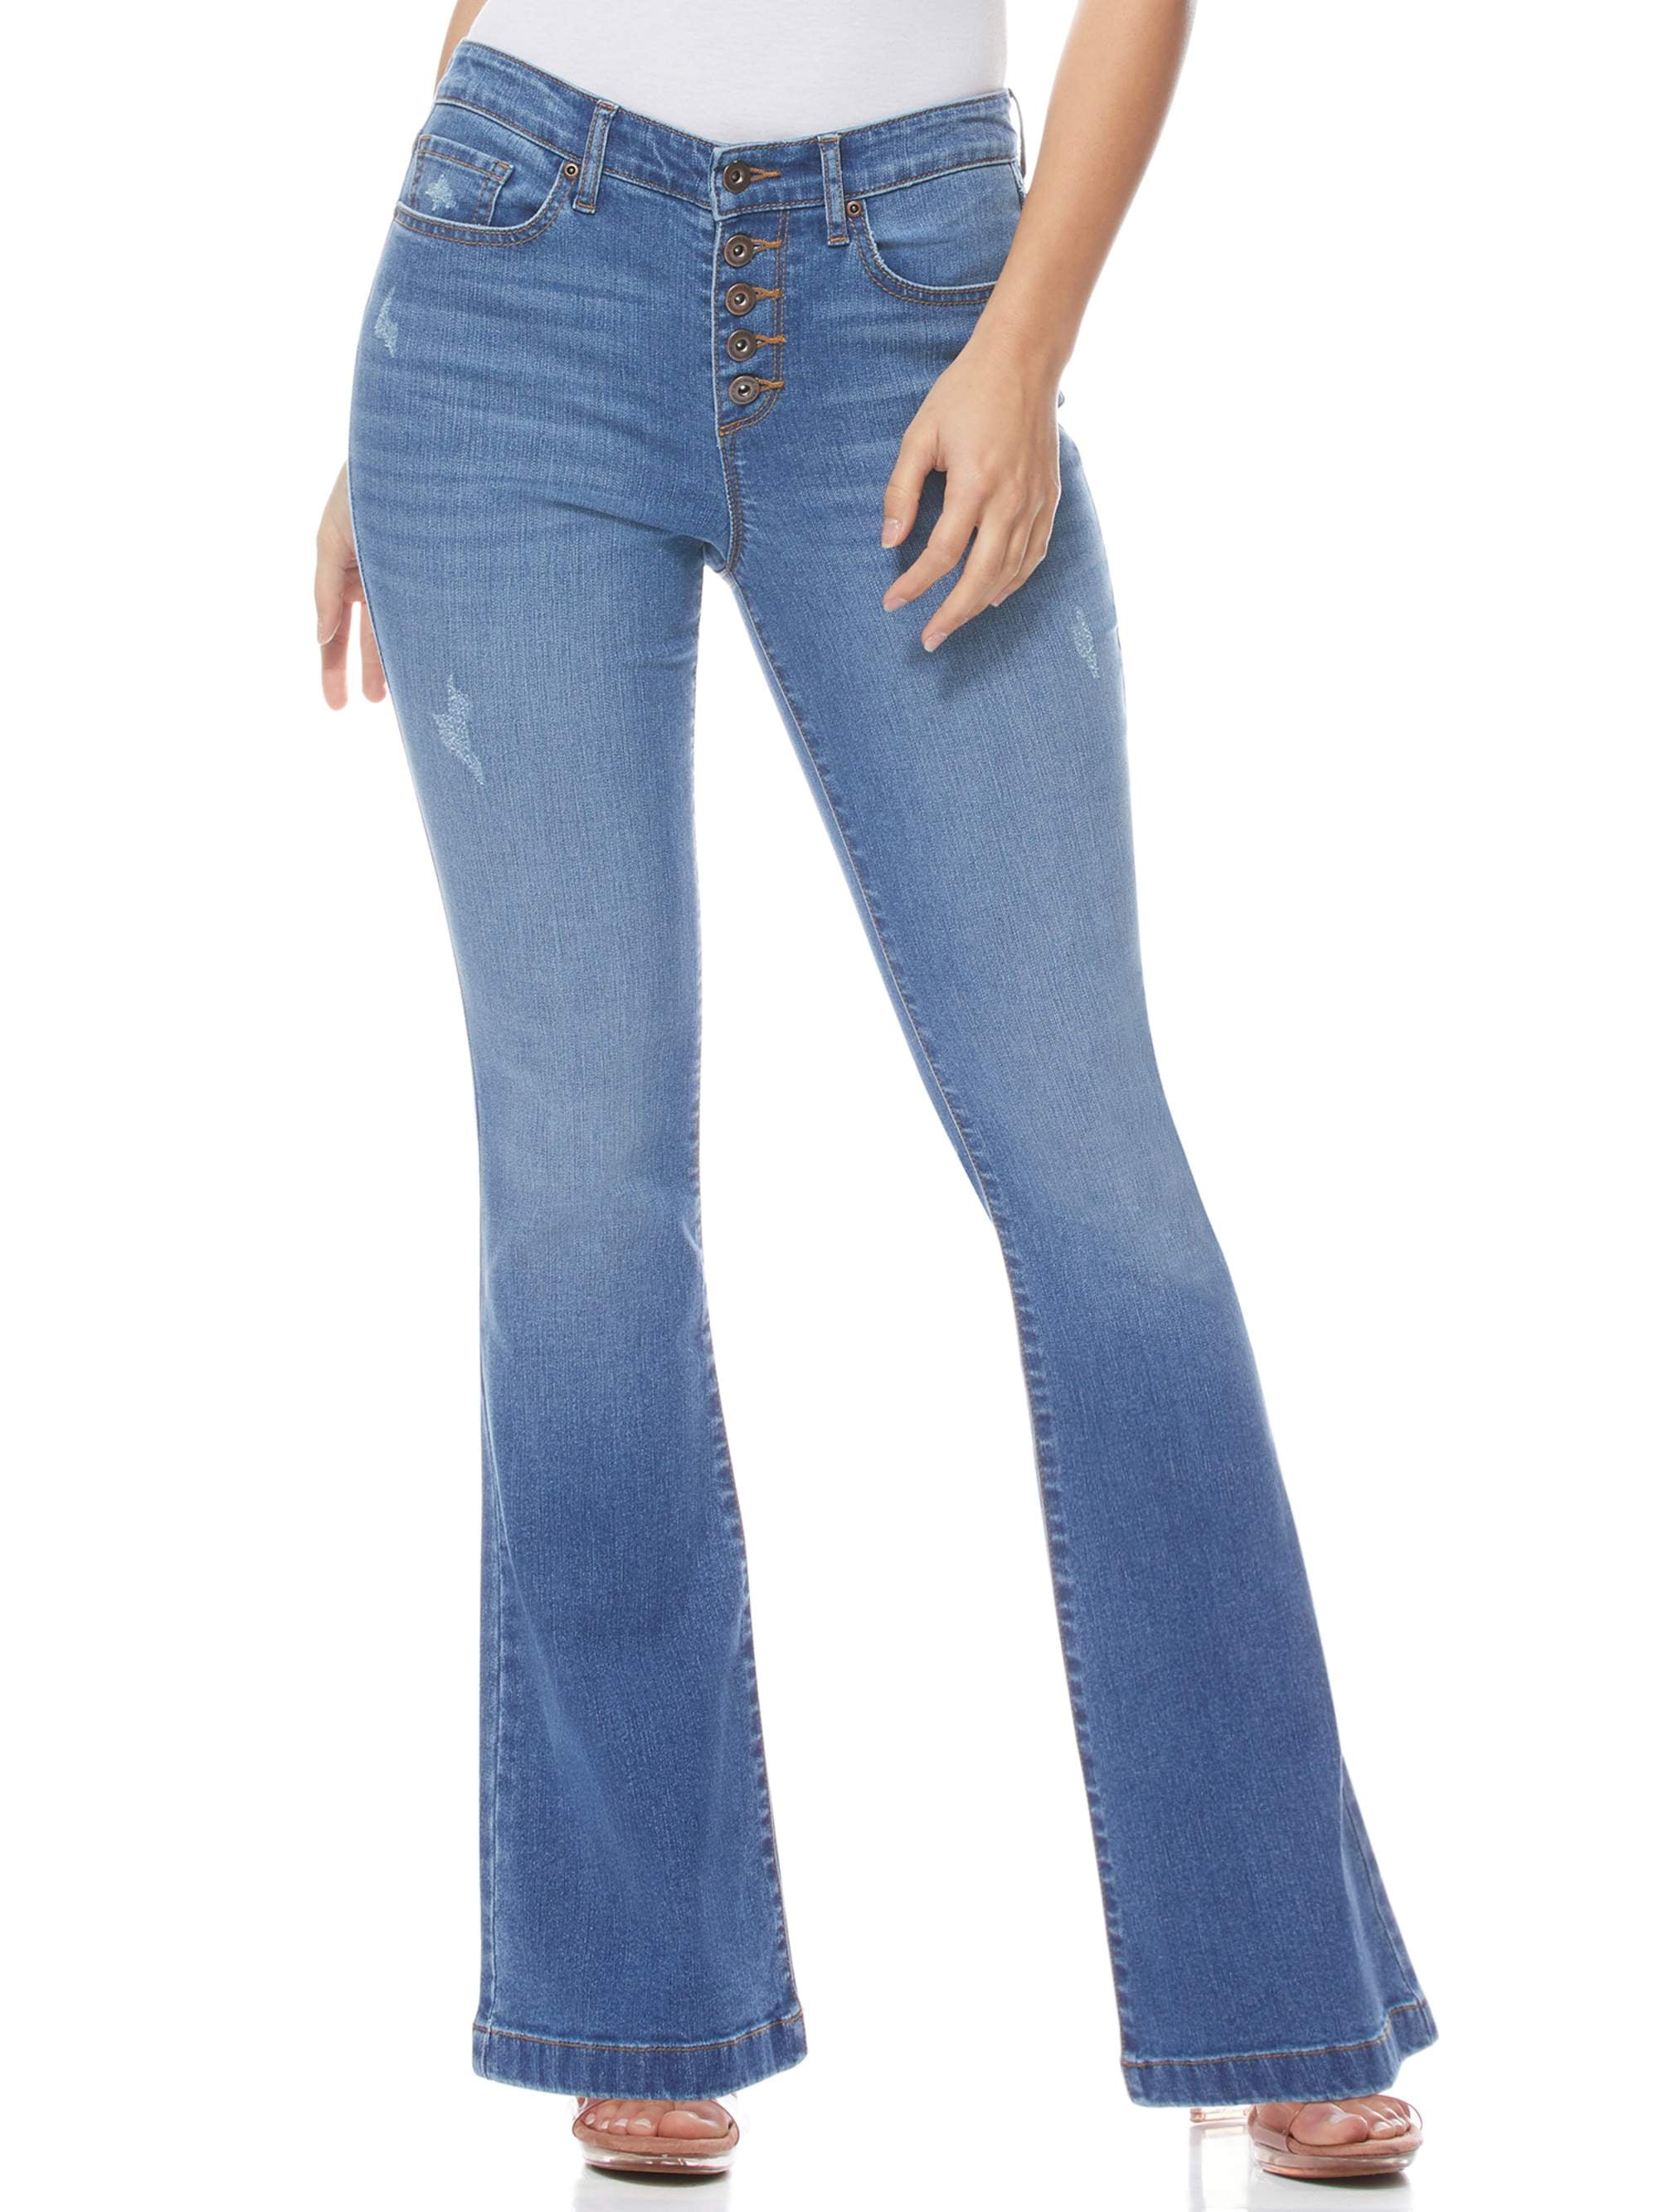 stretch jeans womens walmart